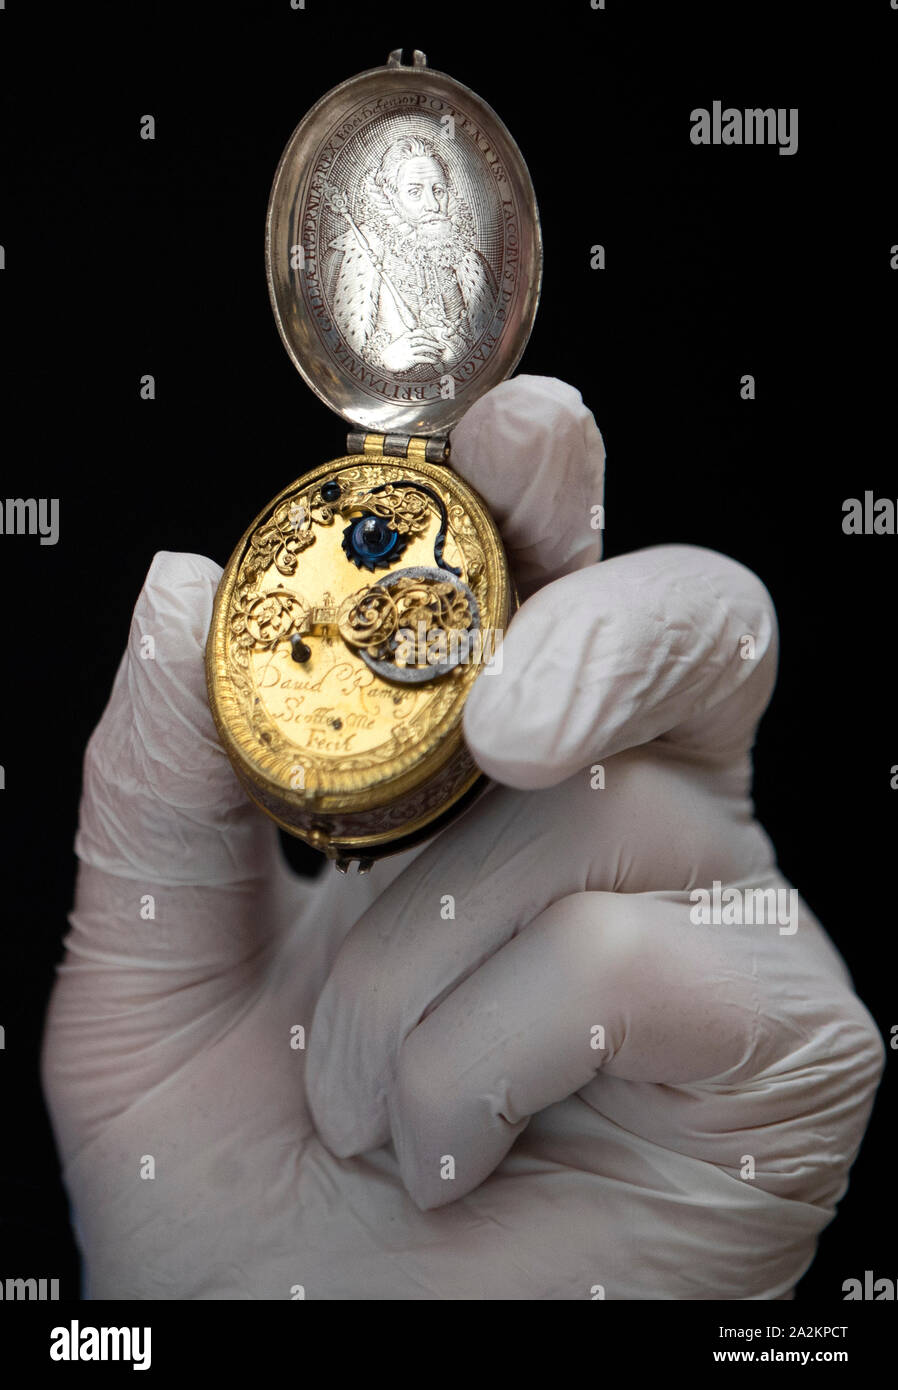 Le Dr John C Taylor tient sa 17e siècle argent astronomique et ovale doré watch avec un portrait du roi James VI par l'horloger écossais David Ramsay qui sera exposé dans le cadre de 'le luxe du temps : Horloges de 1550-1750" Exposition au Musée National d'Écosse, Édimbourg, du 4 octobre 2019. Banque D'Images